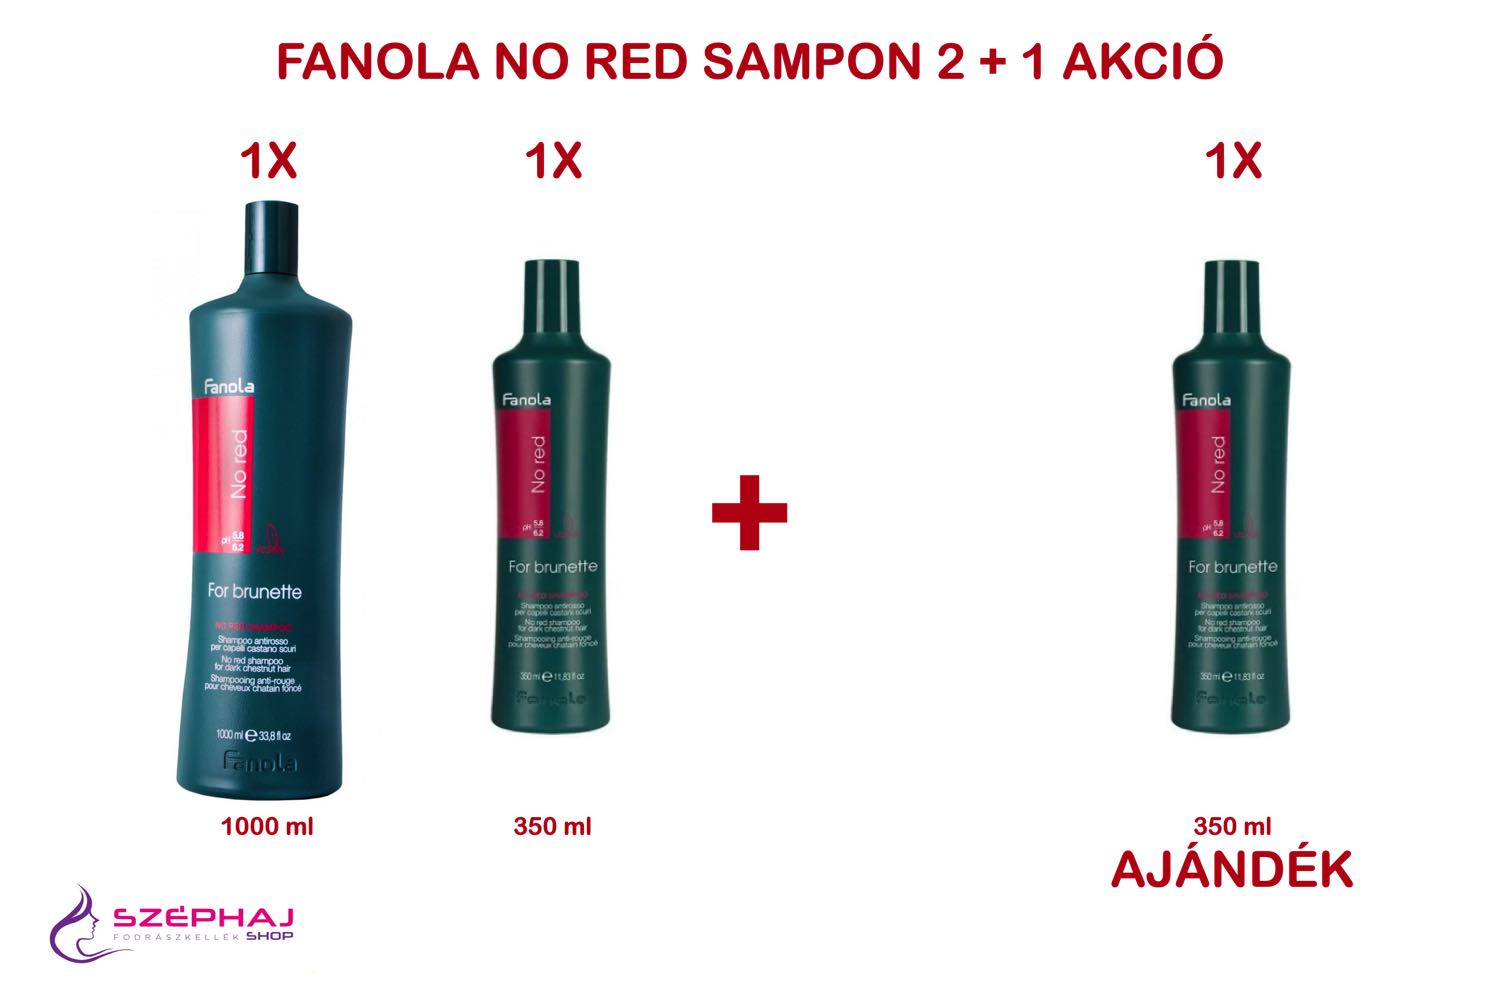 FANOLA No Red For Brunette Sampon 1000 ml & 350 ml 2+1 AKCIÓ